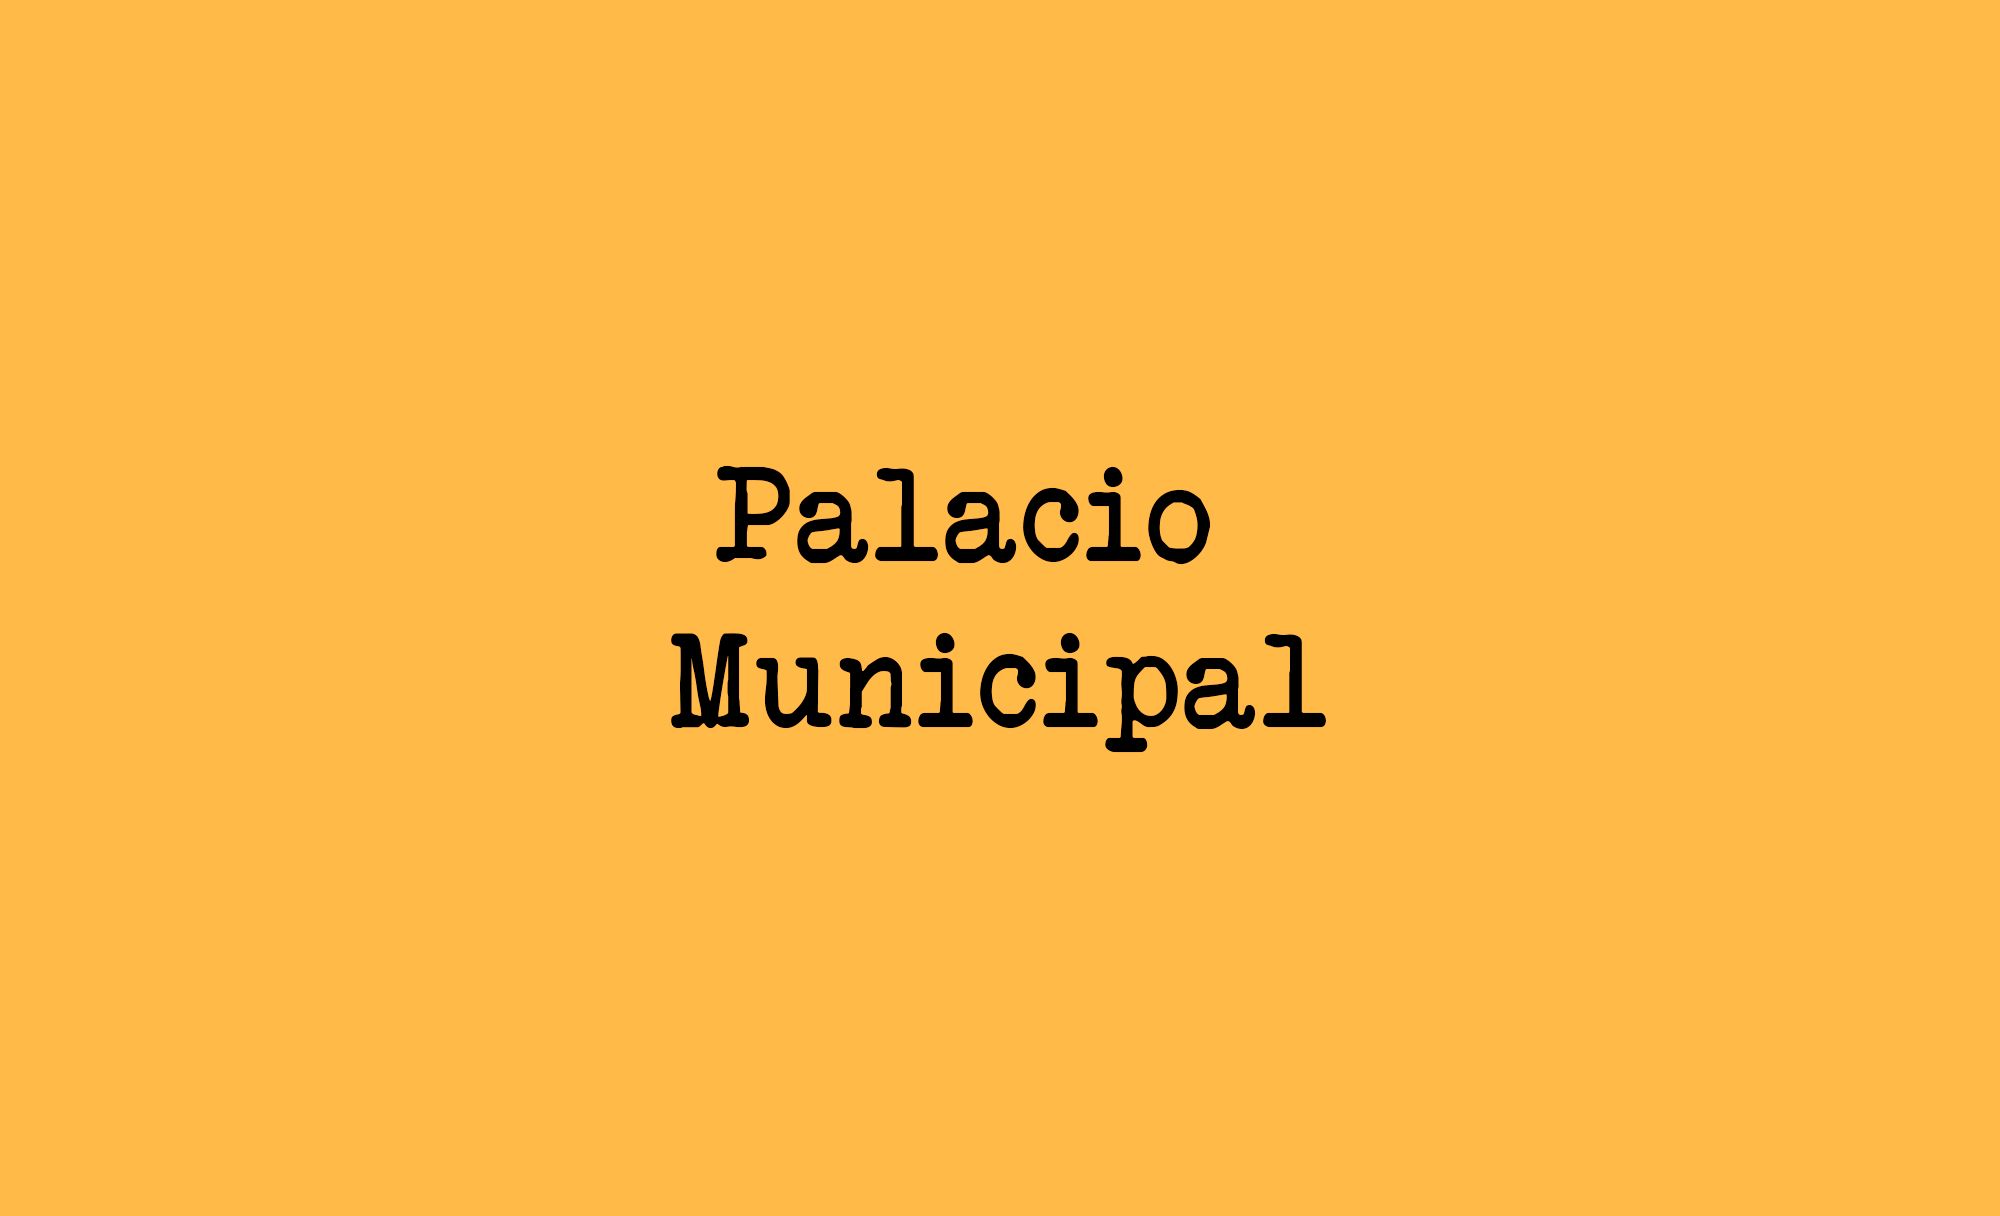 Desafío: “Digitalizar” el Palacio Municipal de la Plaza Principal